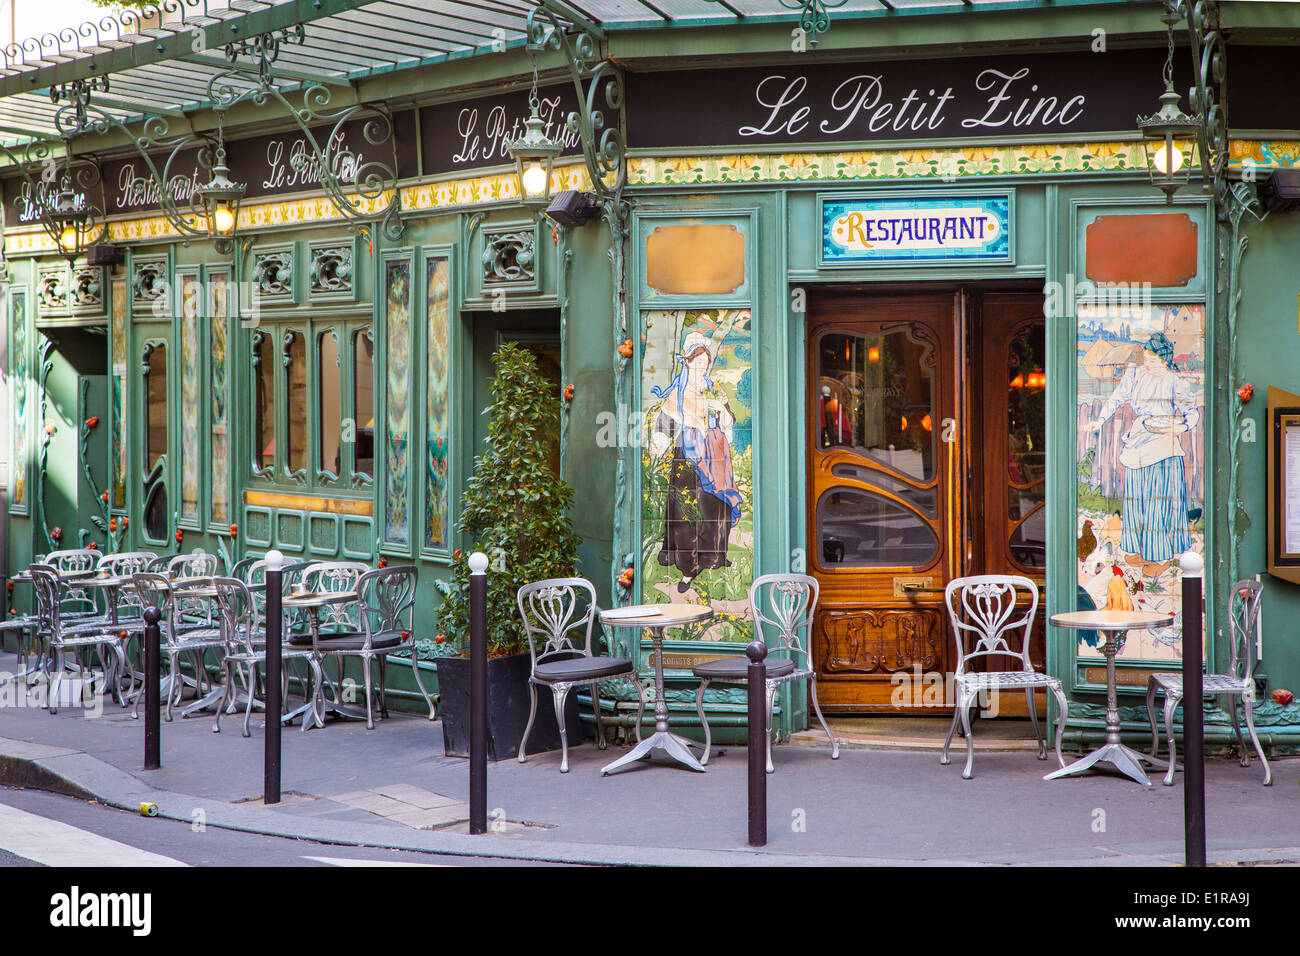 Le Petit Zinc restaurant along Rue des Saints-Pères Stock Photo ...